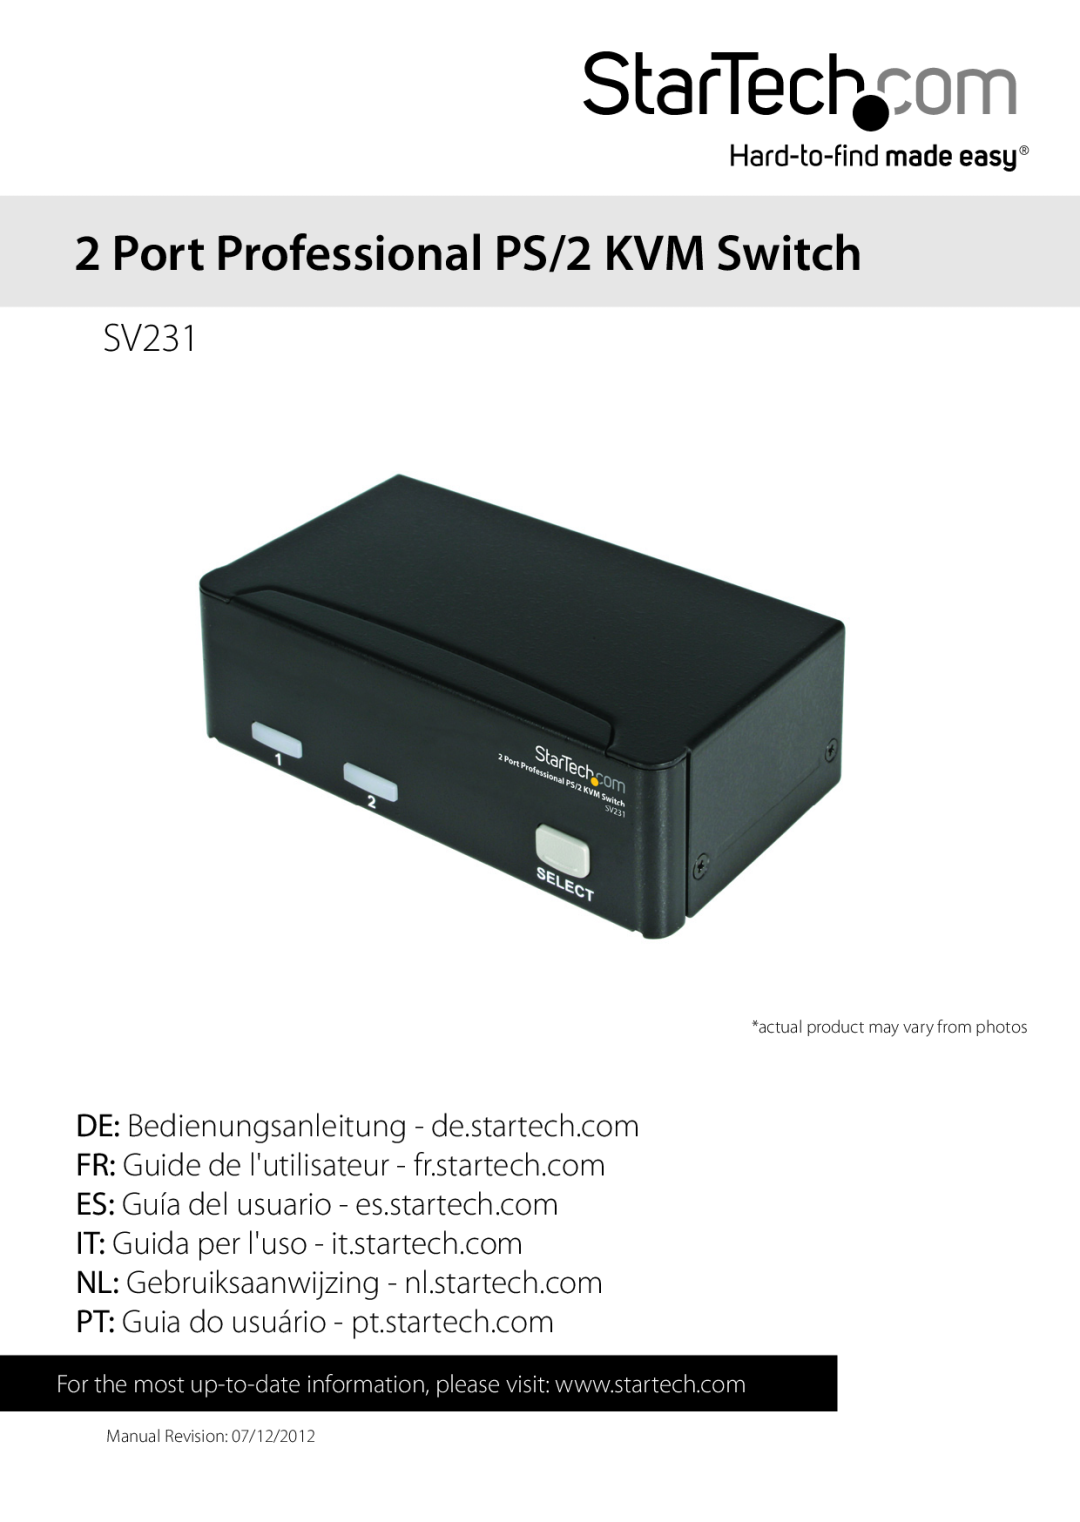 StarTech.com Sv231 manual Port Professional PS/2 KVM Switch, SV231, DE Bedienungsanleitung - de.startech.com 